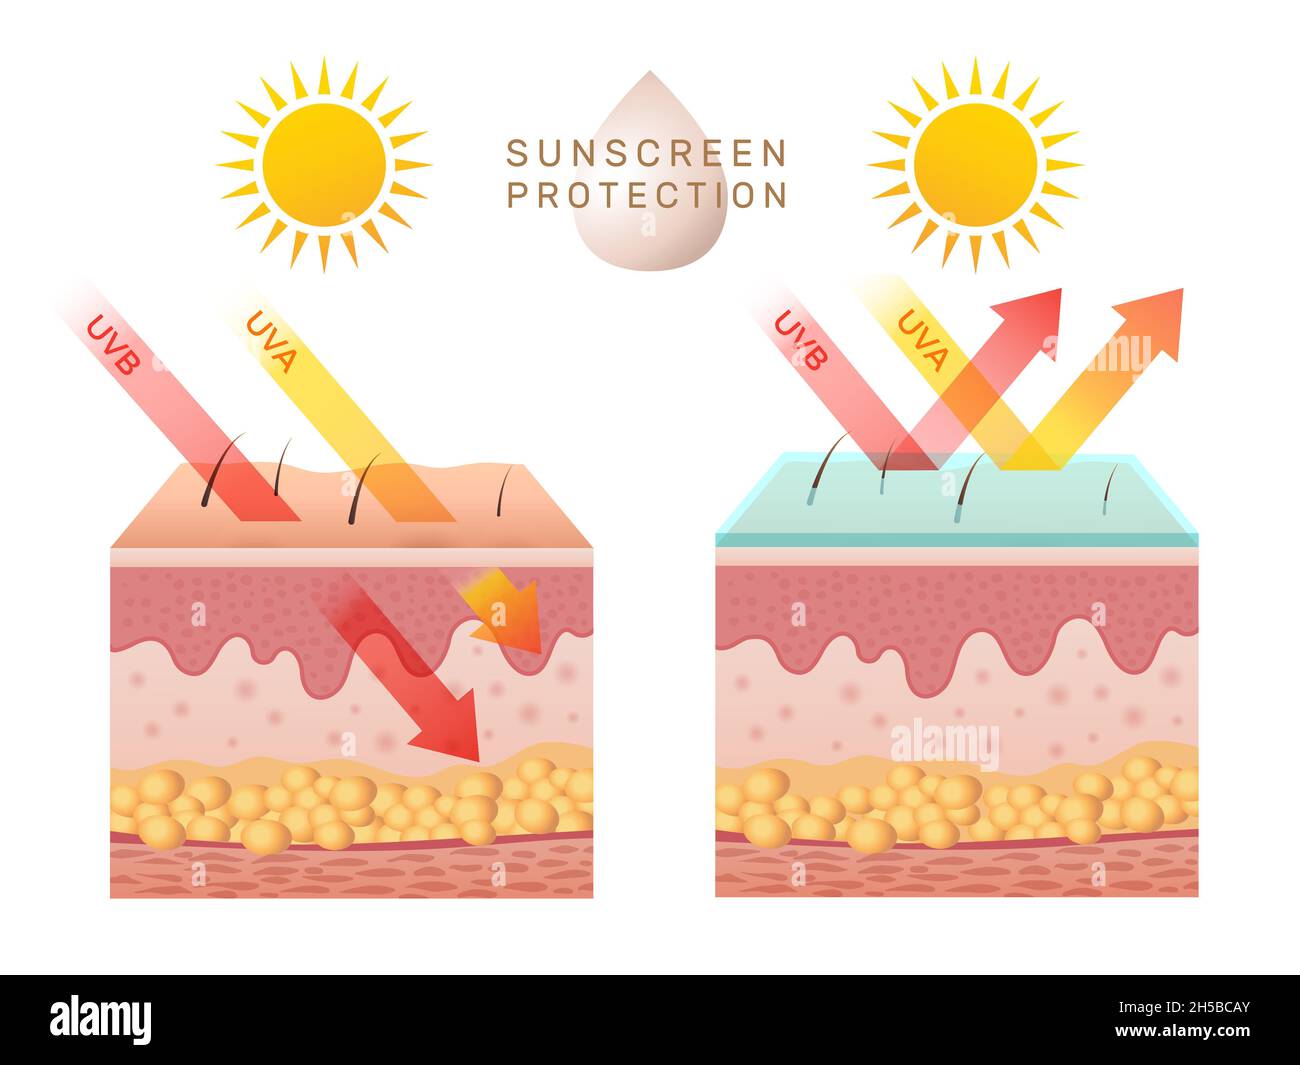 Protezione della pelle dai raggi UV. Bucce della pelle umana danneggiate prima e dopo la protezione solare corpo strati adiposi epidermide recente modello infografico vettoriale Illustrazione Vettoriale